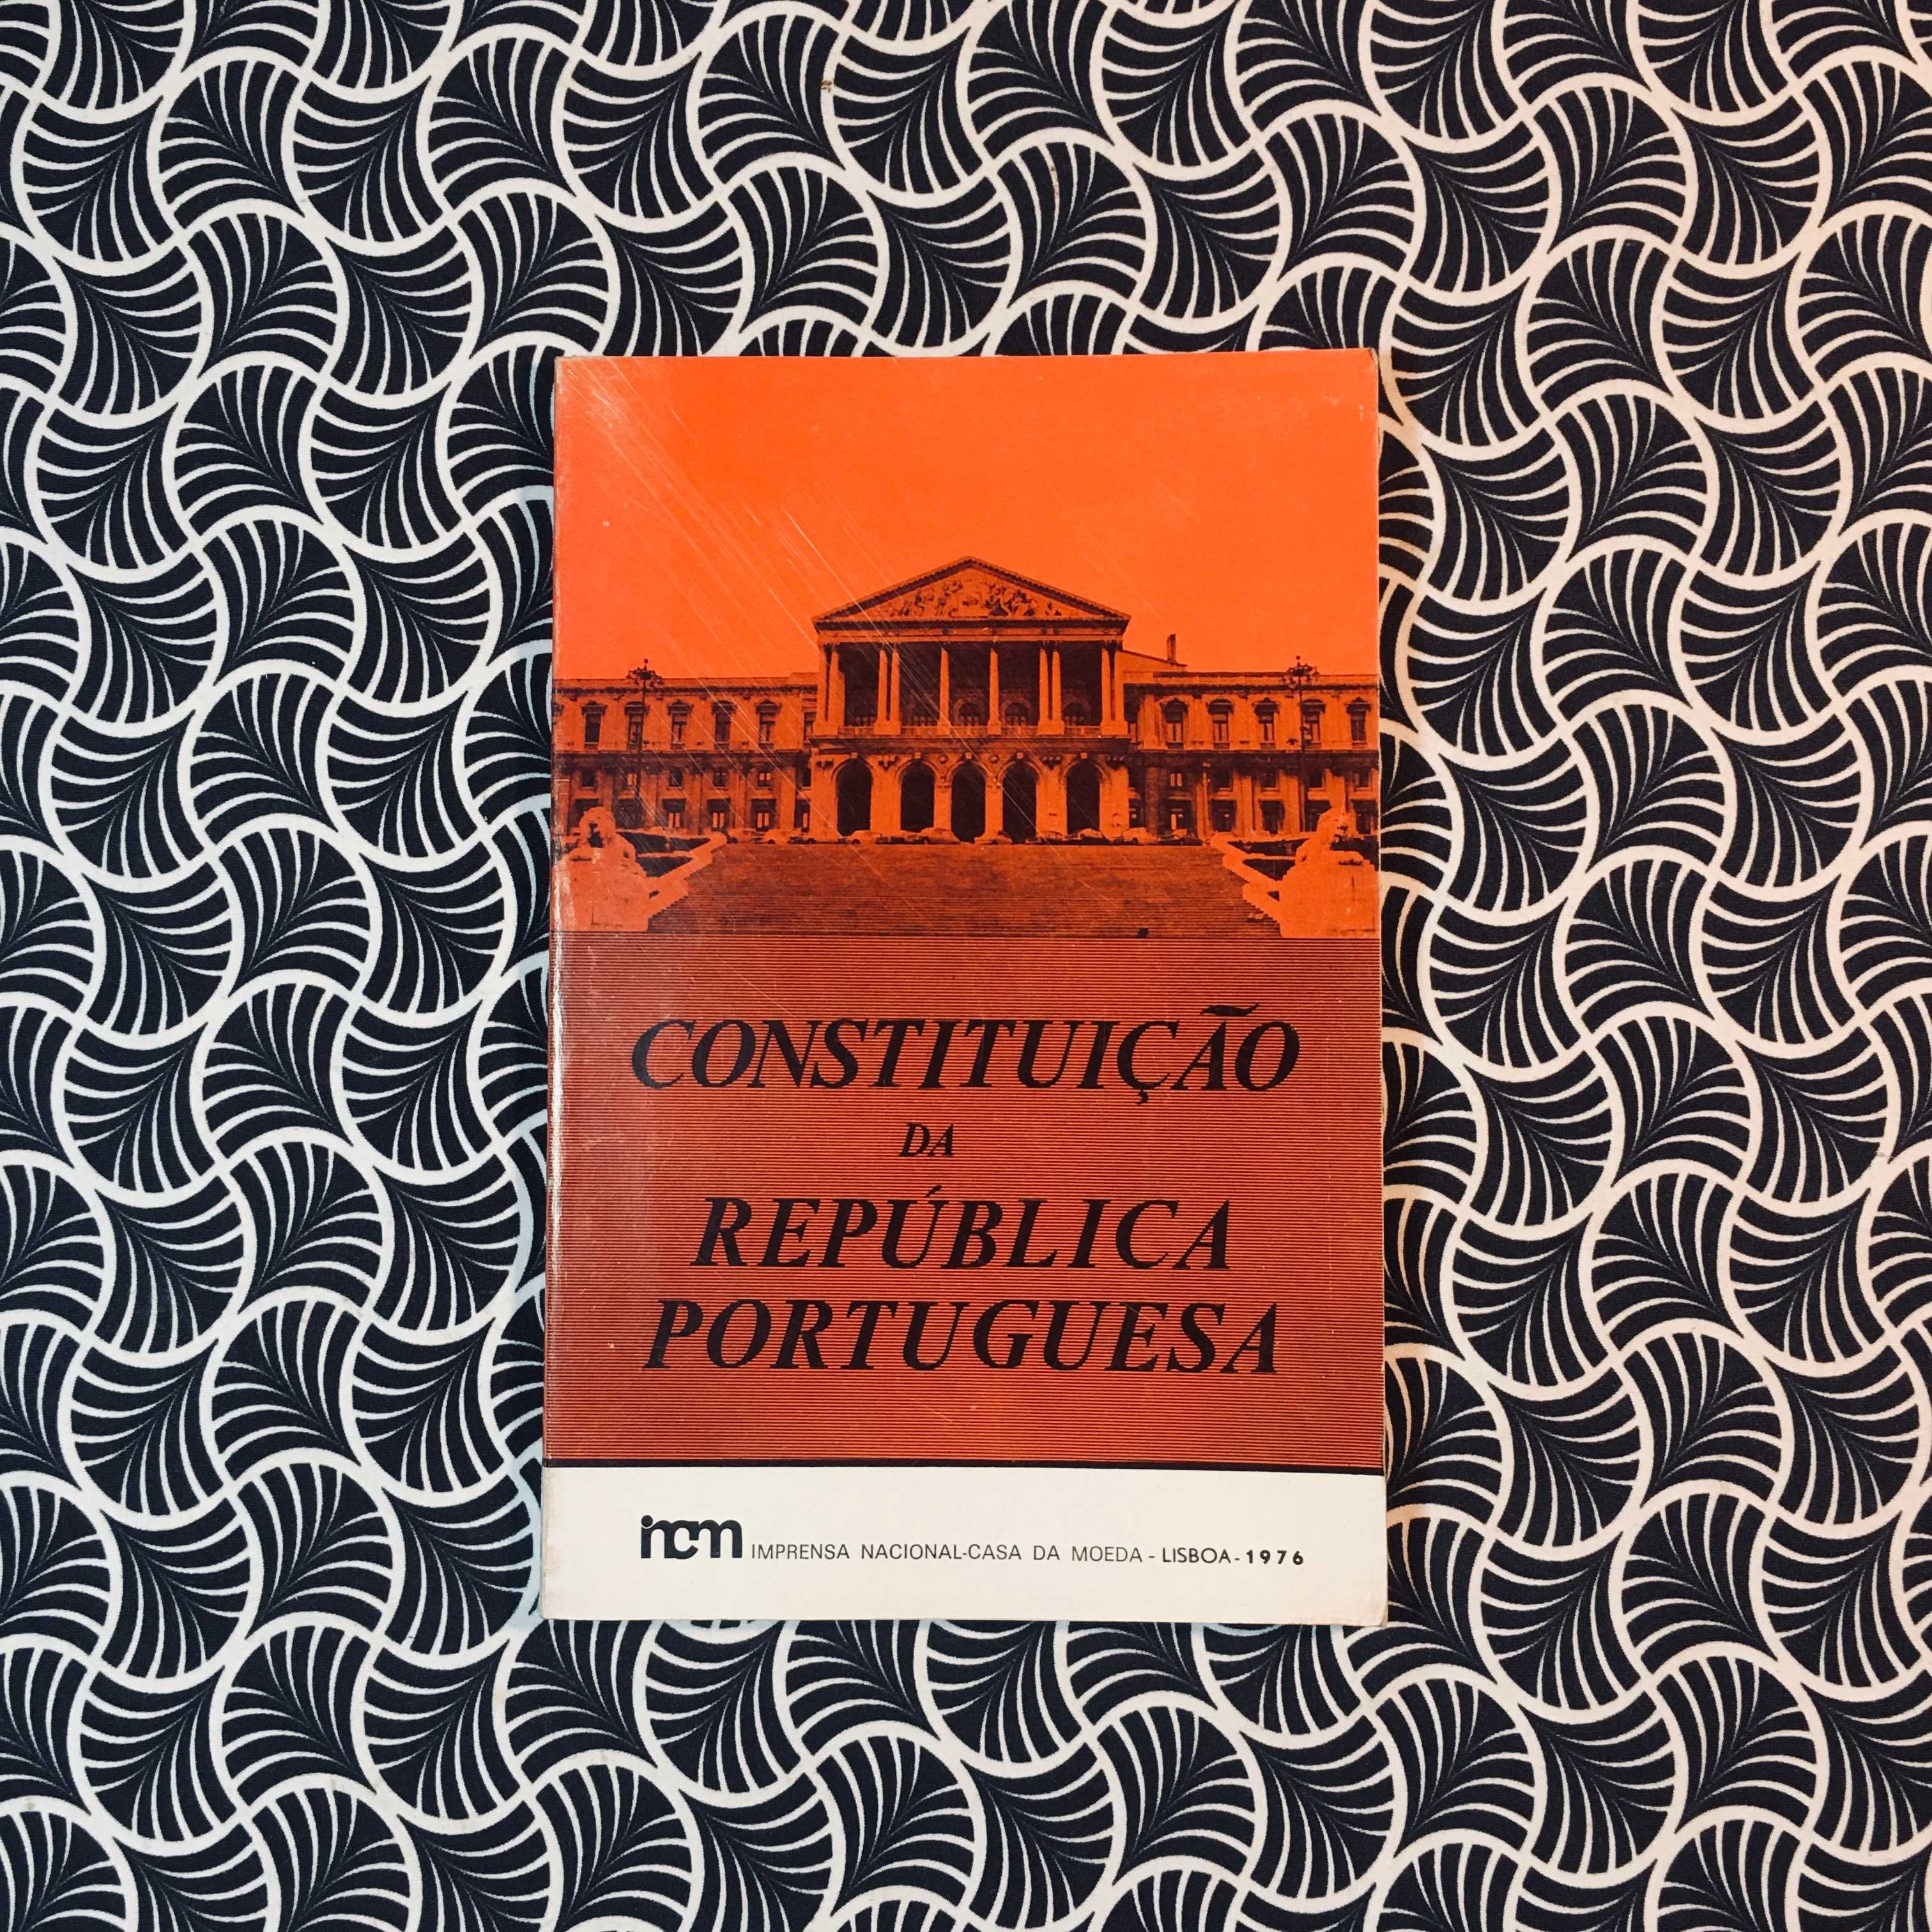 Constituição da República Portuguesa (1ª ed.)